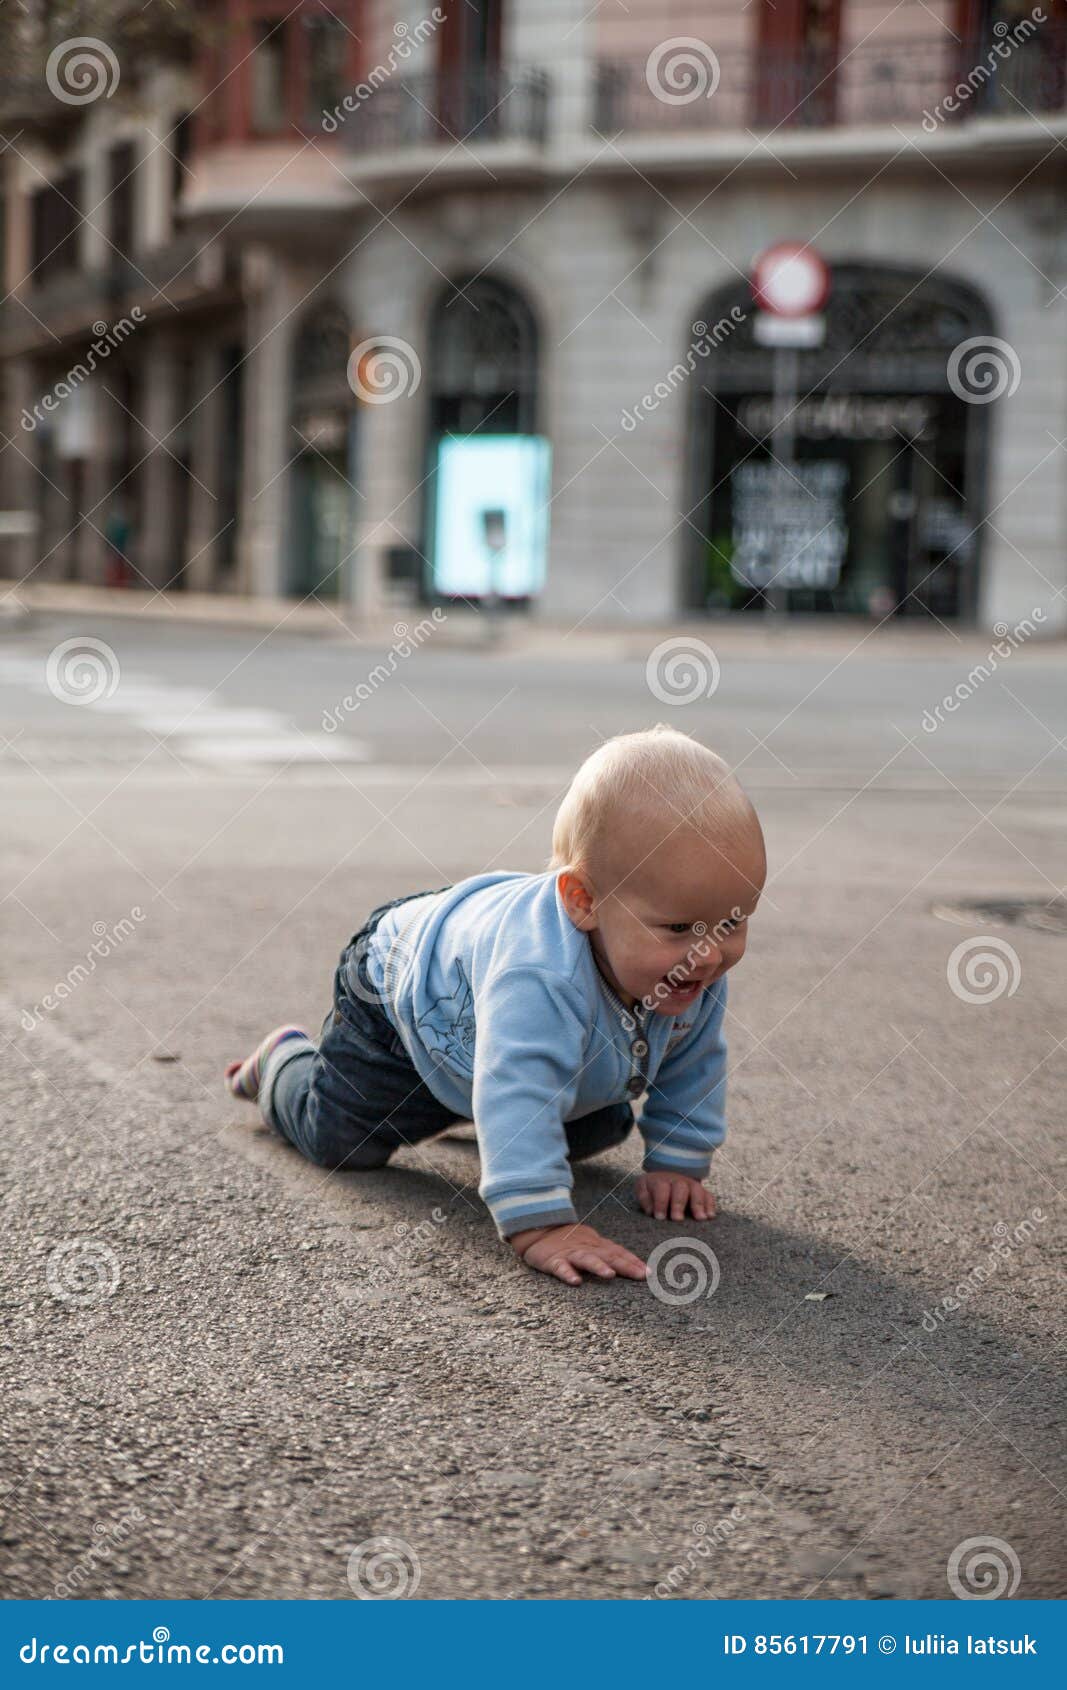 Bebe Que Se Arrastra En La Calle Y La Sonrisa Imagen De Archivo Imagen De Exterior Calle